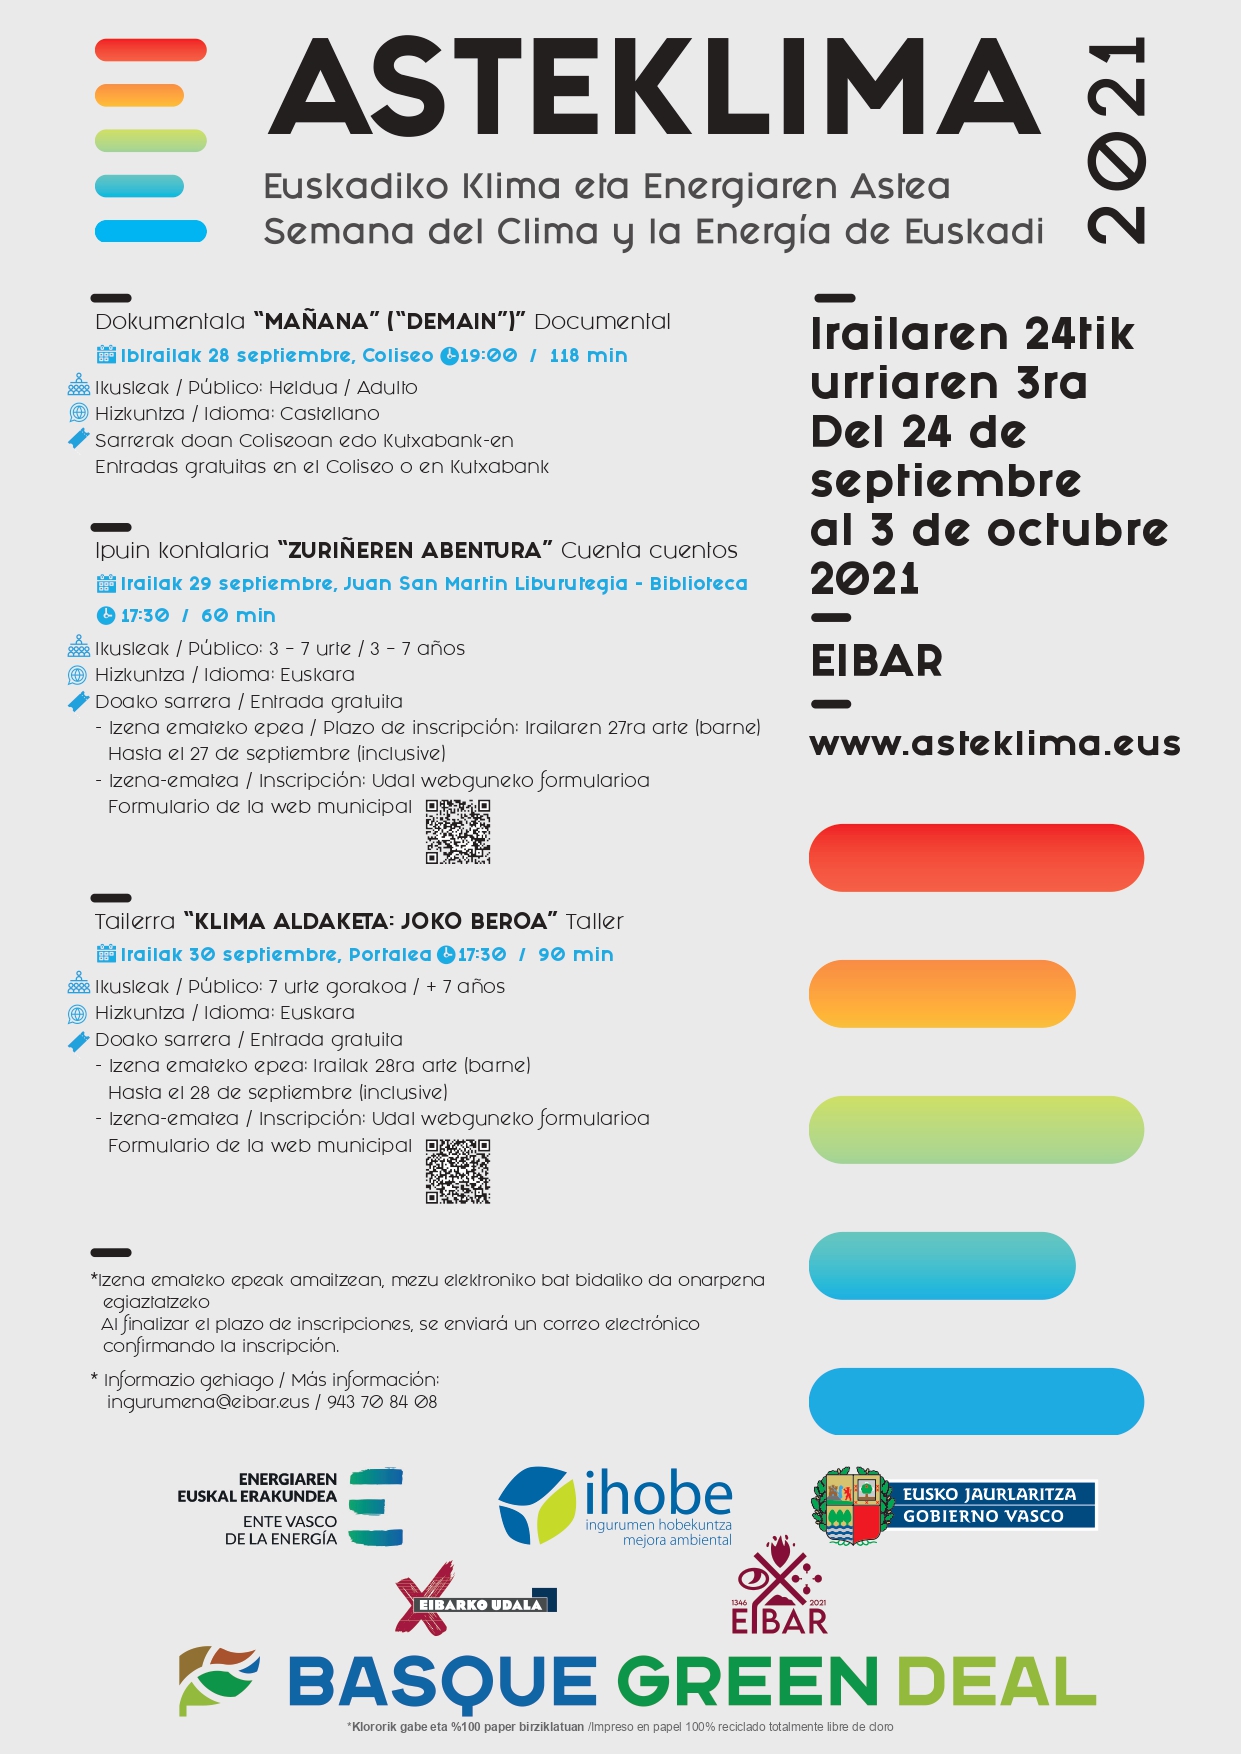 Eibar se suma al Asteklima, segunda semana del cambio climático de Euskadi, con el objetivo de concienciar a la ciudadanía en esta materia